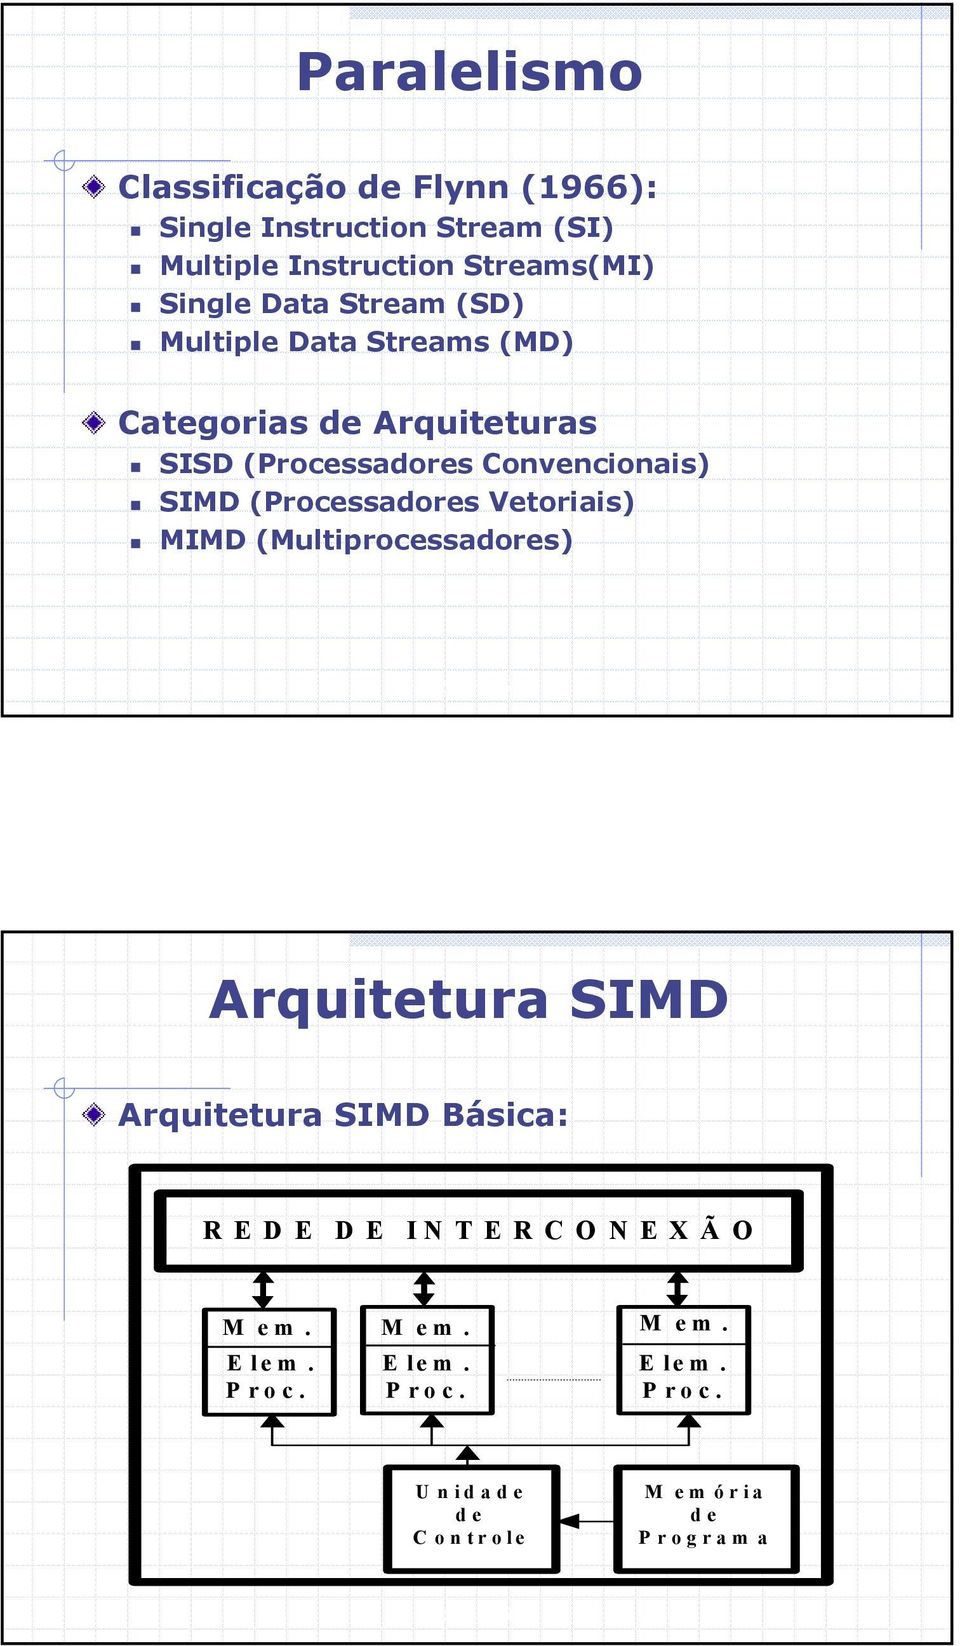 Convencionais) SIMD (Processadores Vetoriais) MIMD (Multiprocessadores) Arquitetura SIMD Arquitetura SIMD